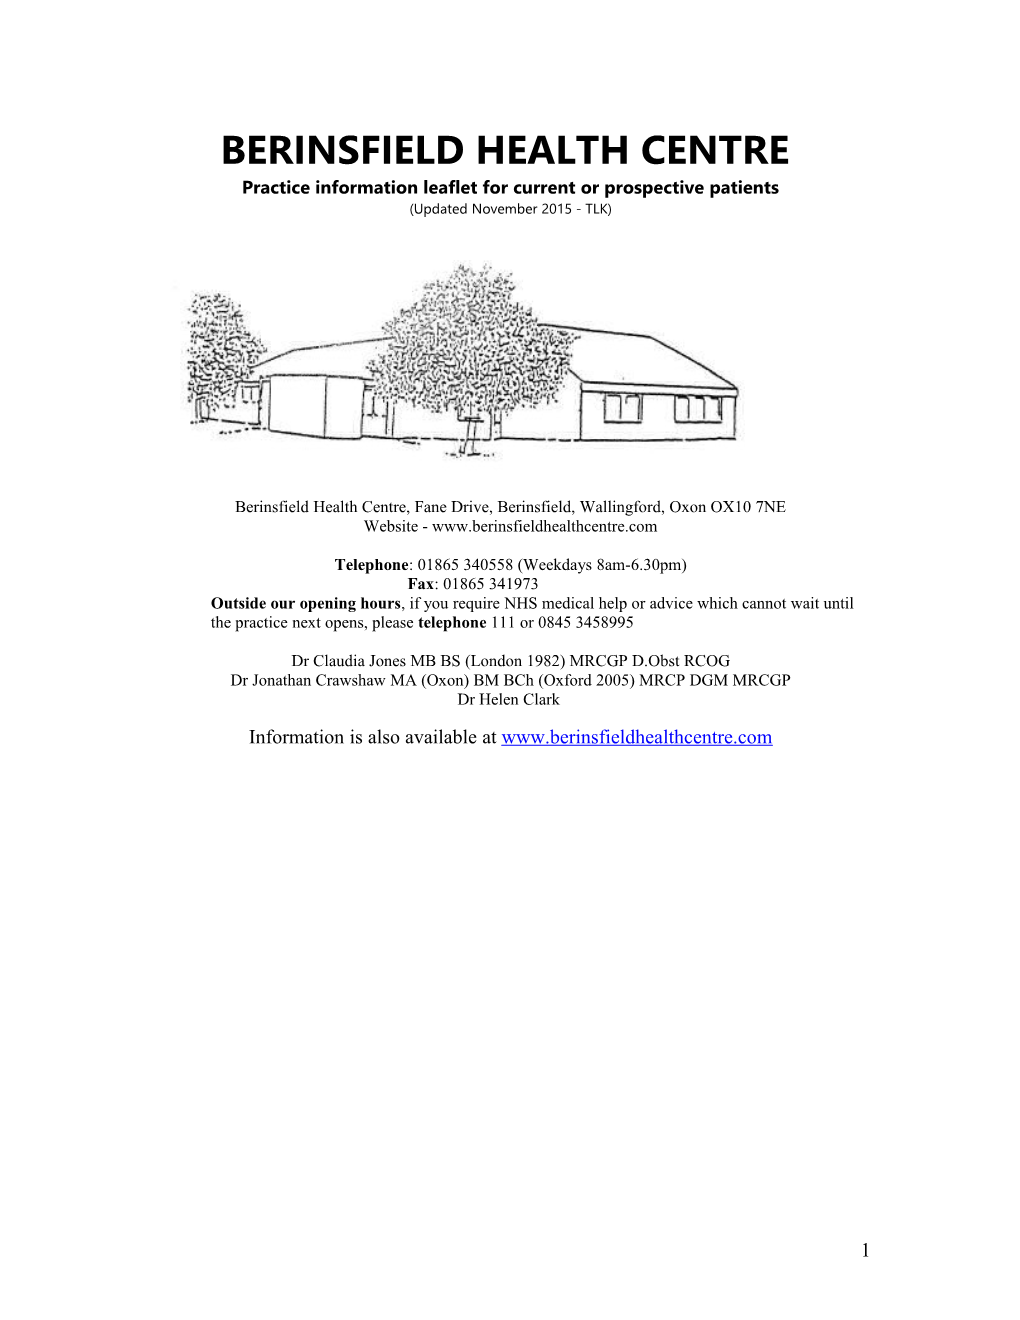 The Health Centre - Berinsfield